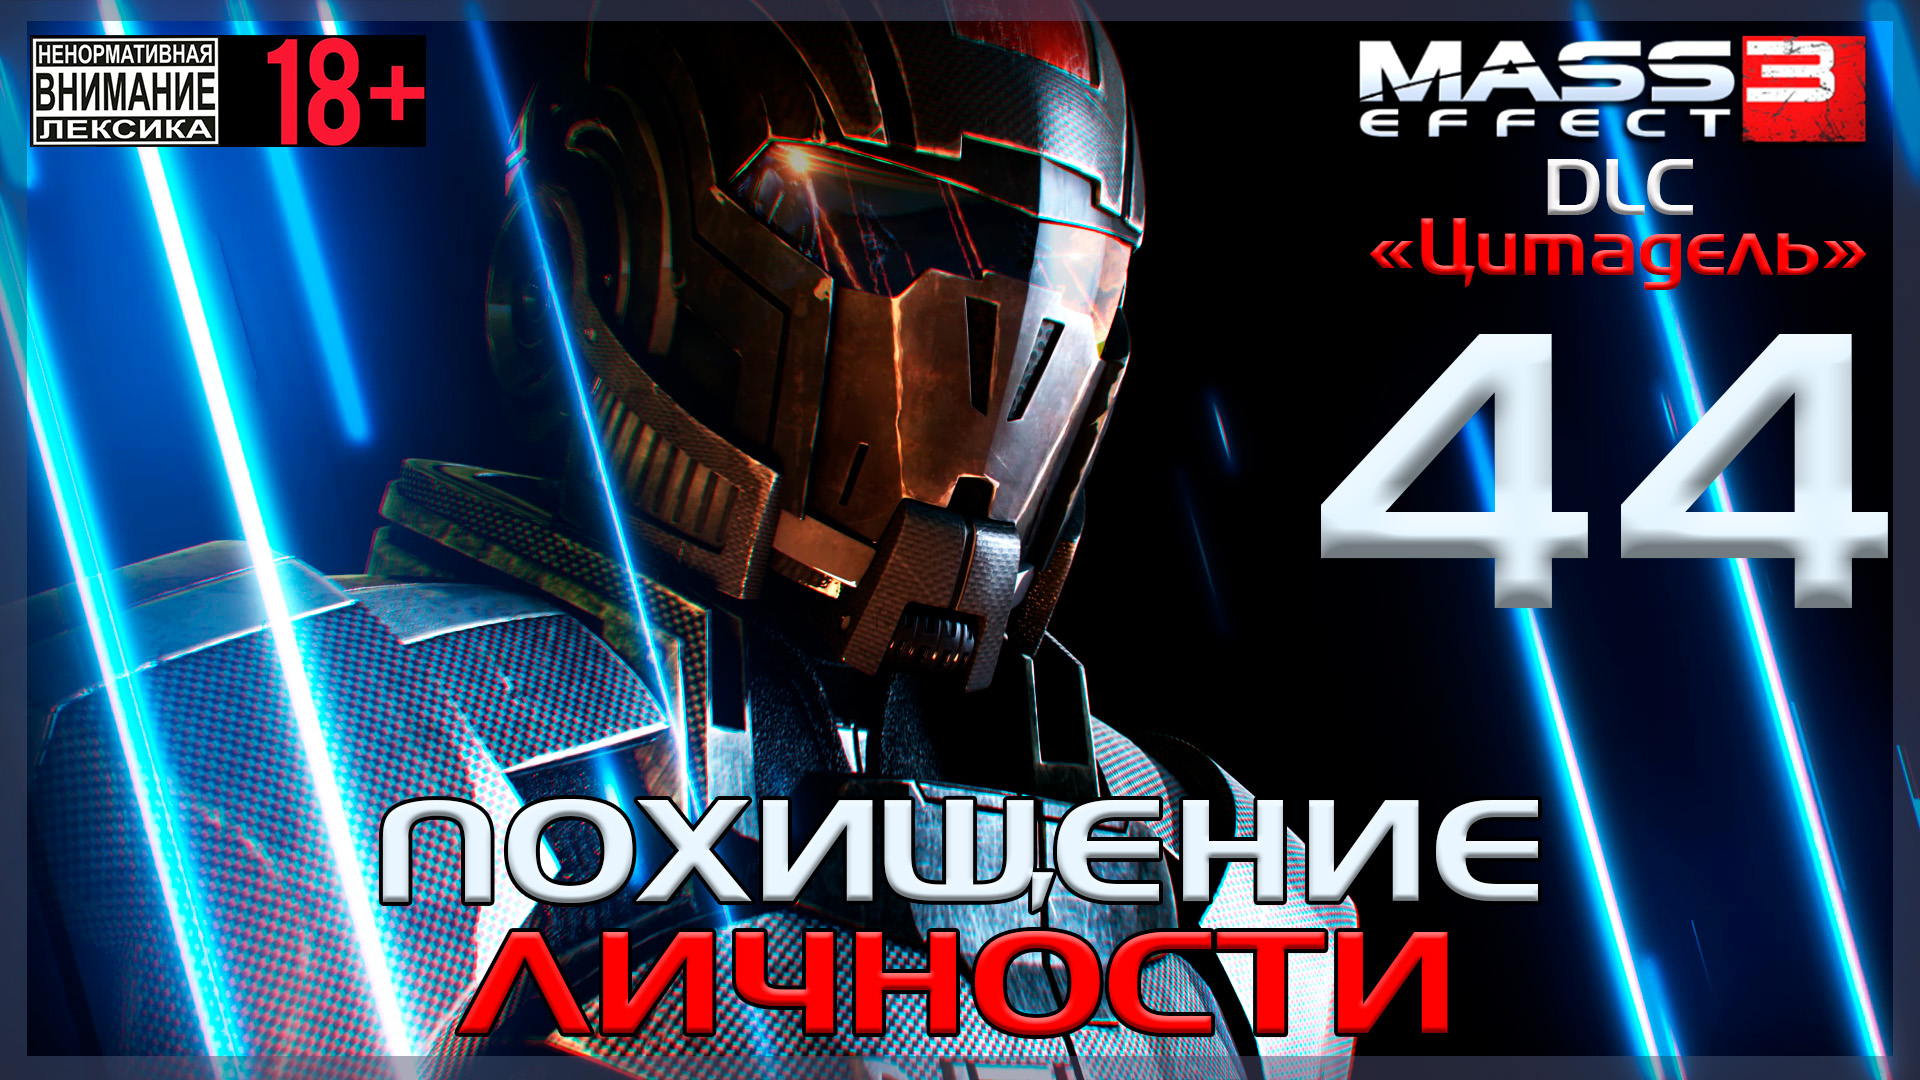 Mass Effect 3 - DLC Цитадель / Original #44 Похищение личности